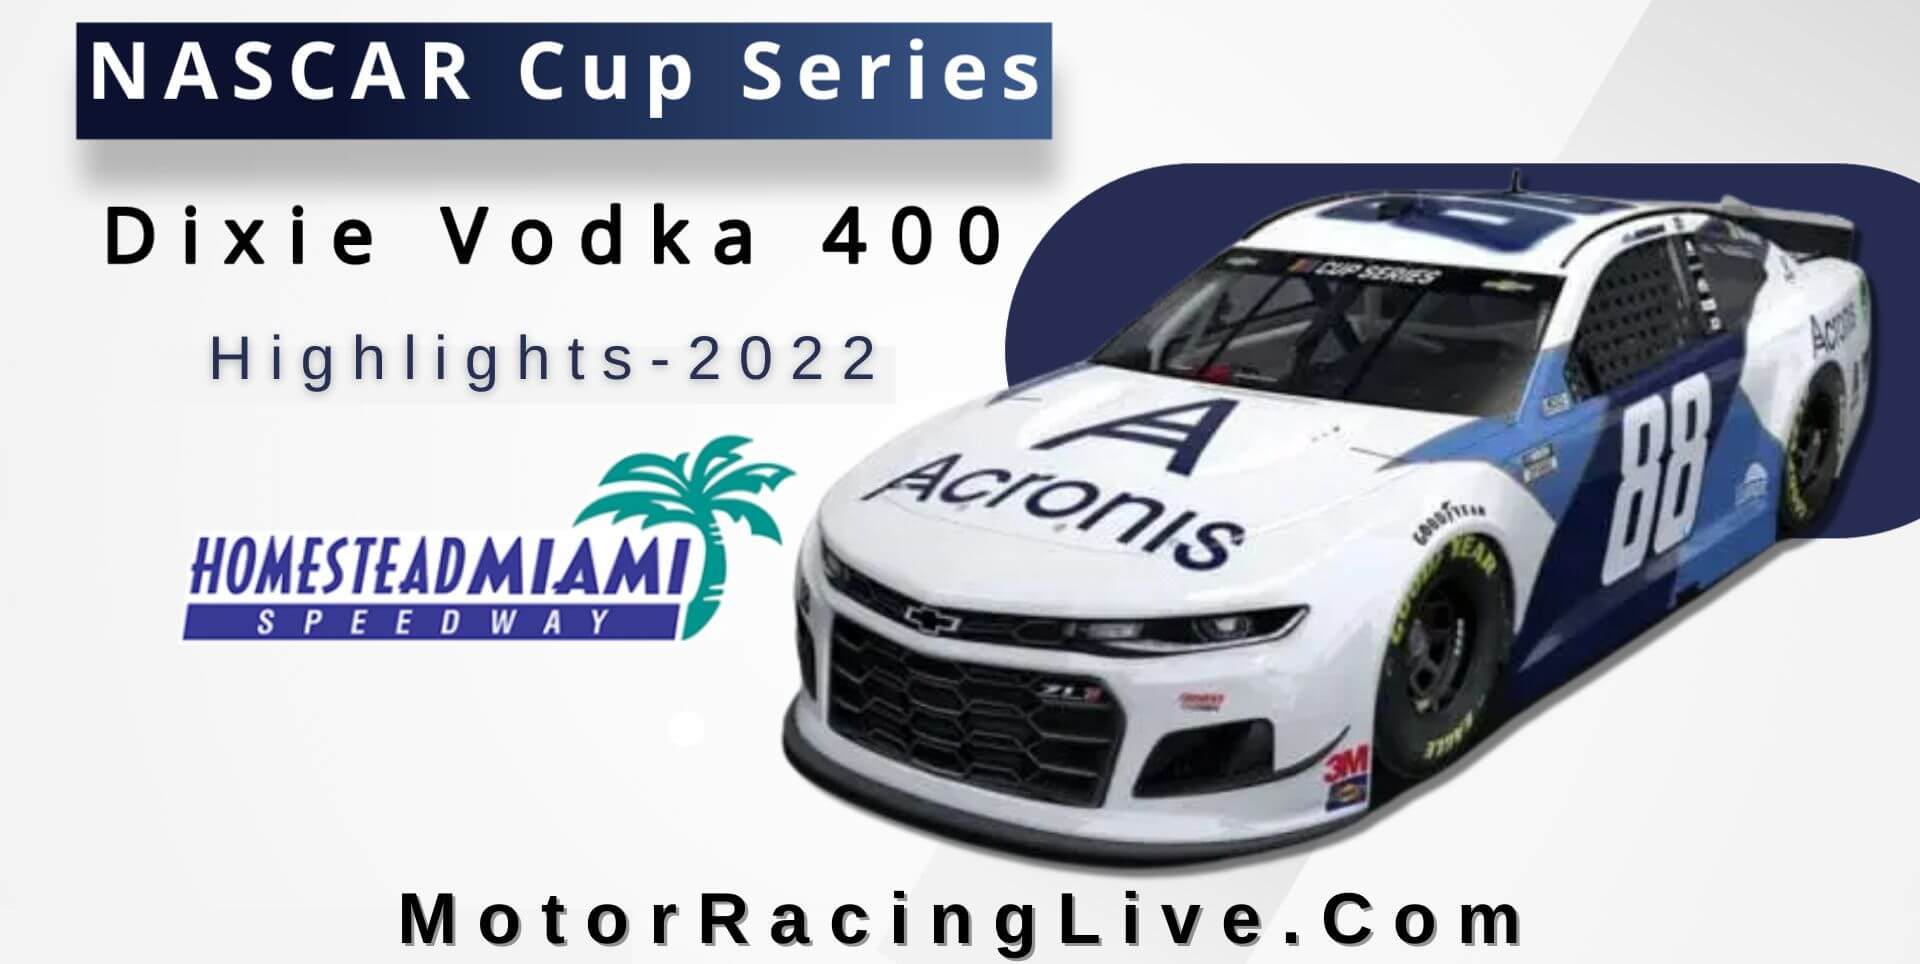 Dixie Vodka 400 Highlights 2022 NASCAR Cup